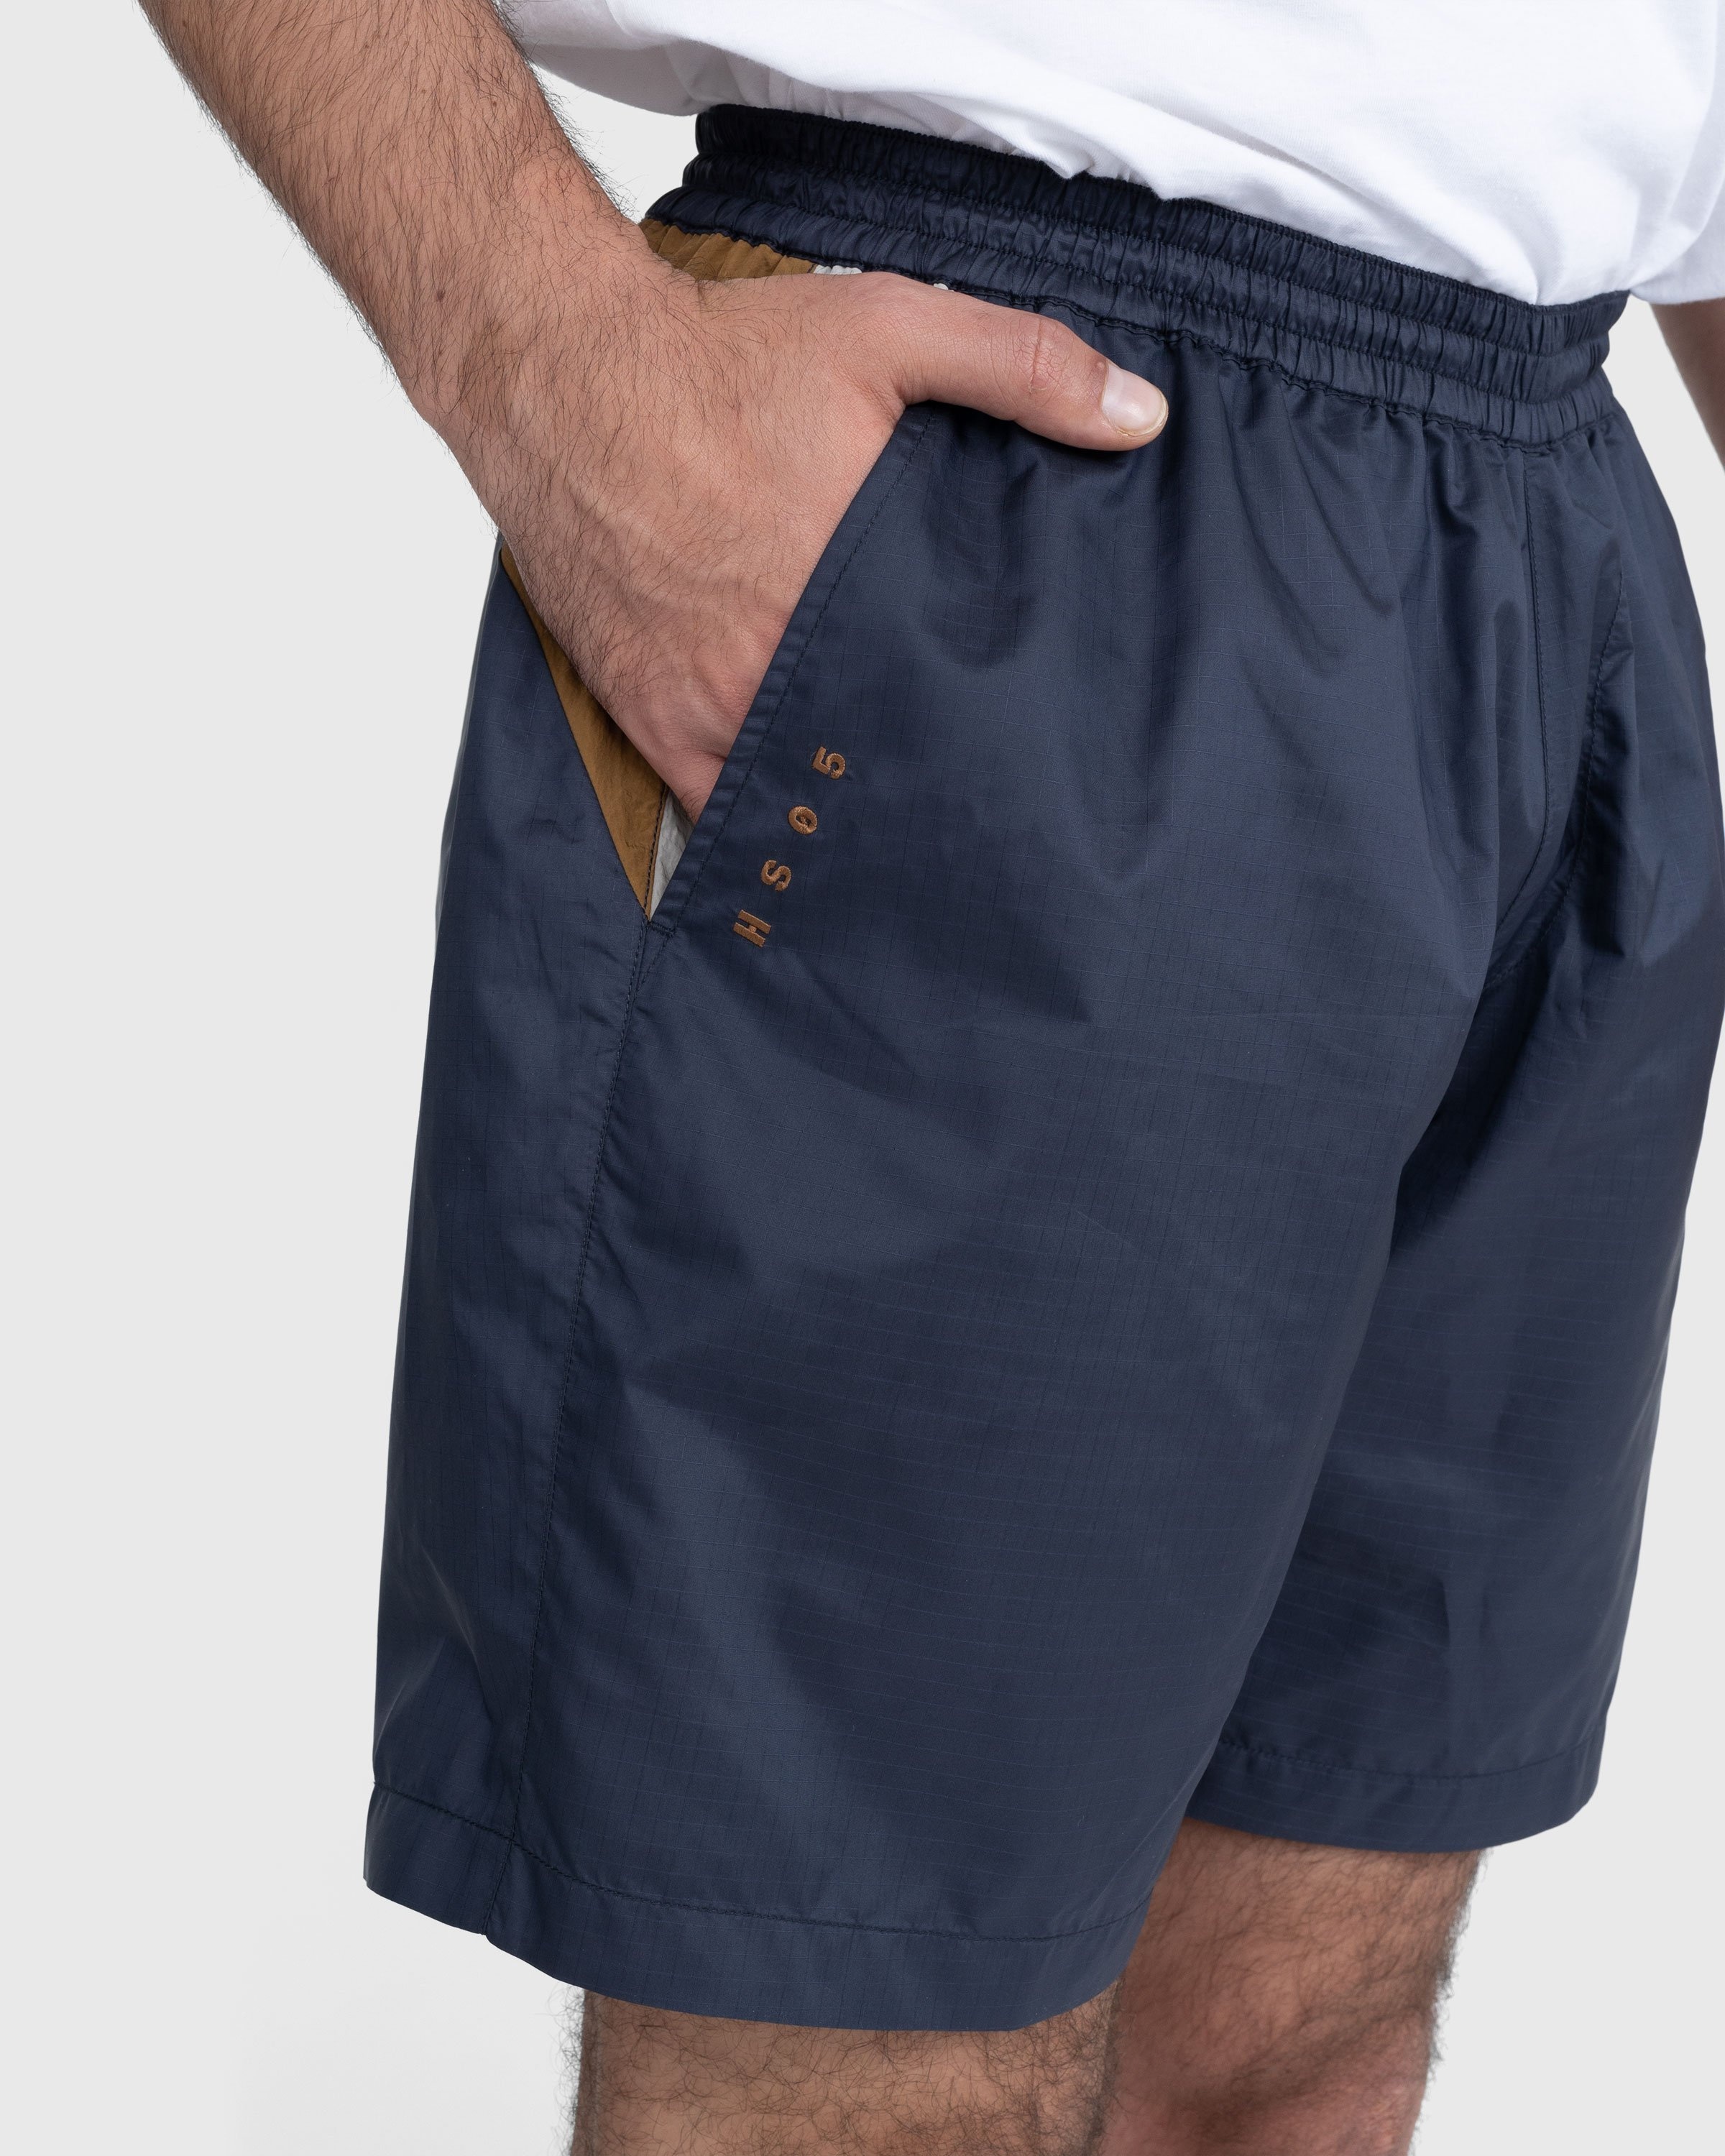 Highsnobiety – Mix Panel Nylon Shorts Navy/Brown | Highsnobiety Shop